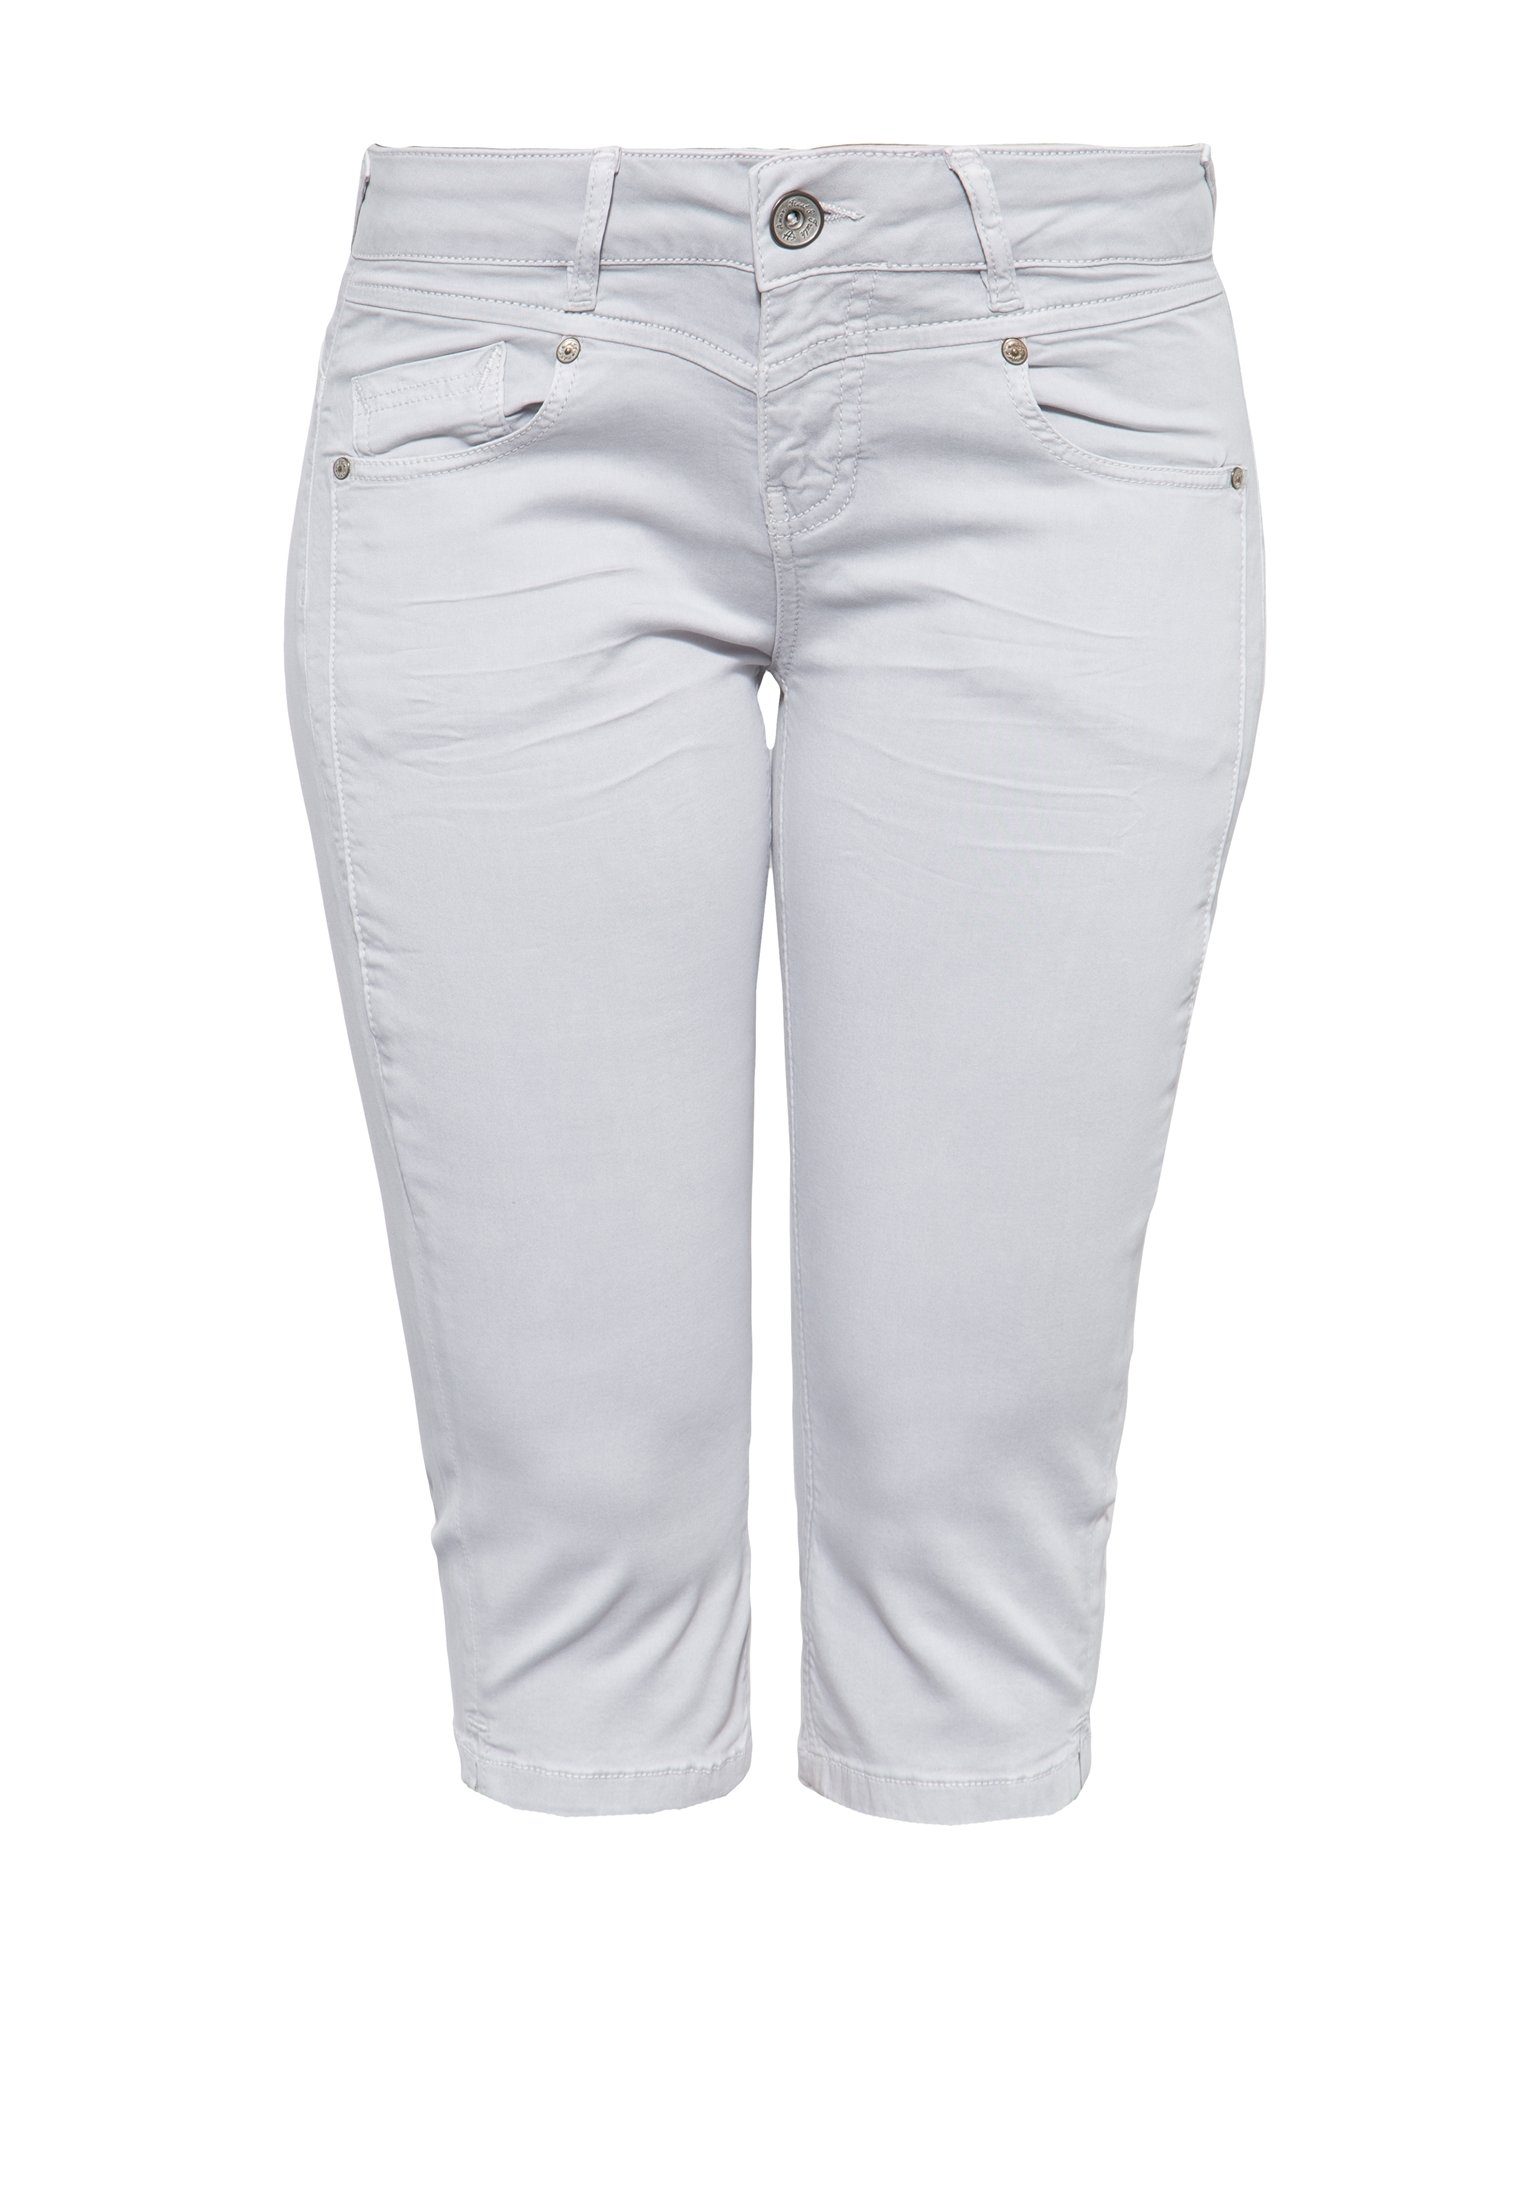 ATT Jeans Caprihose Zoe im 5-Pocket Design